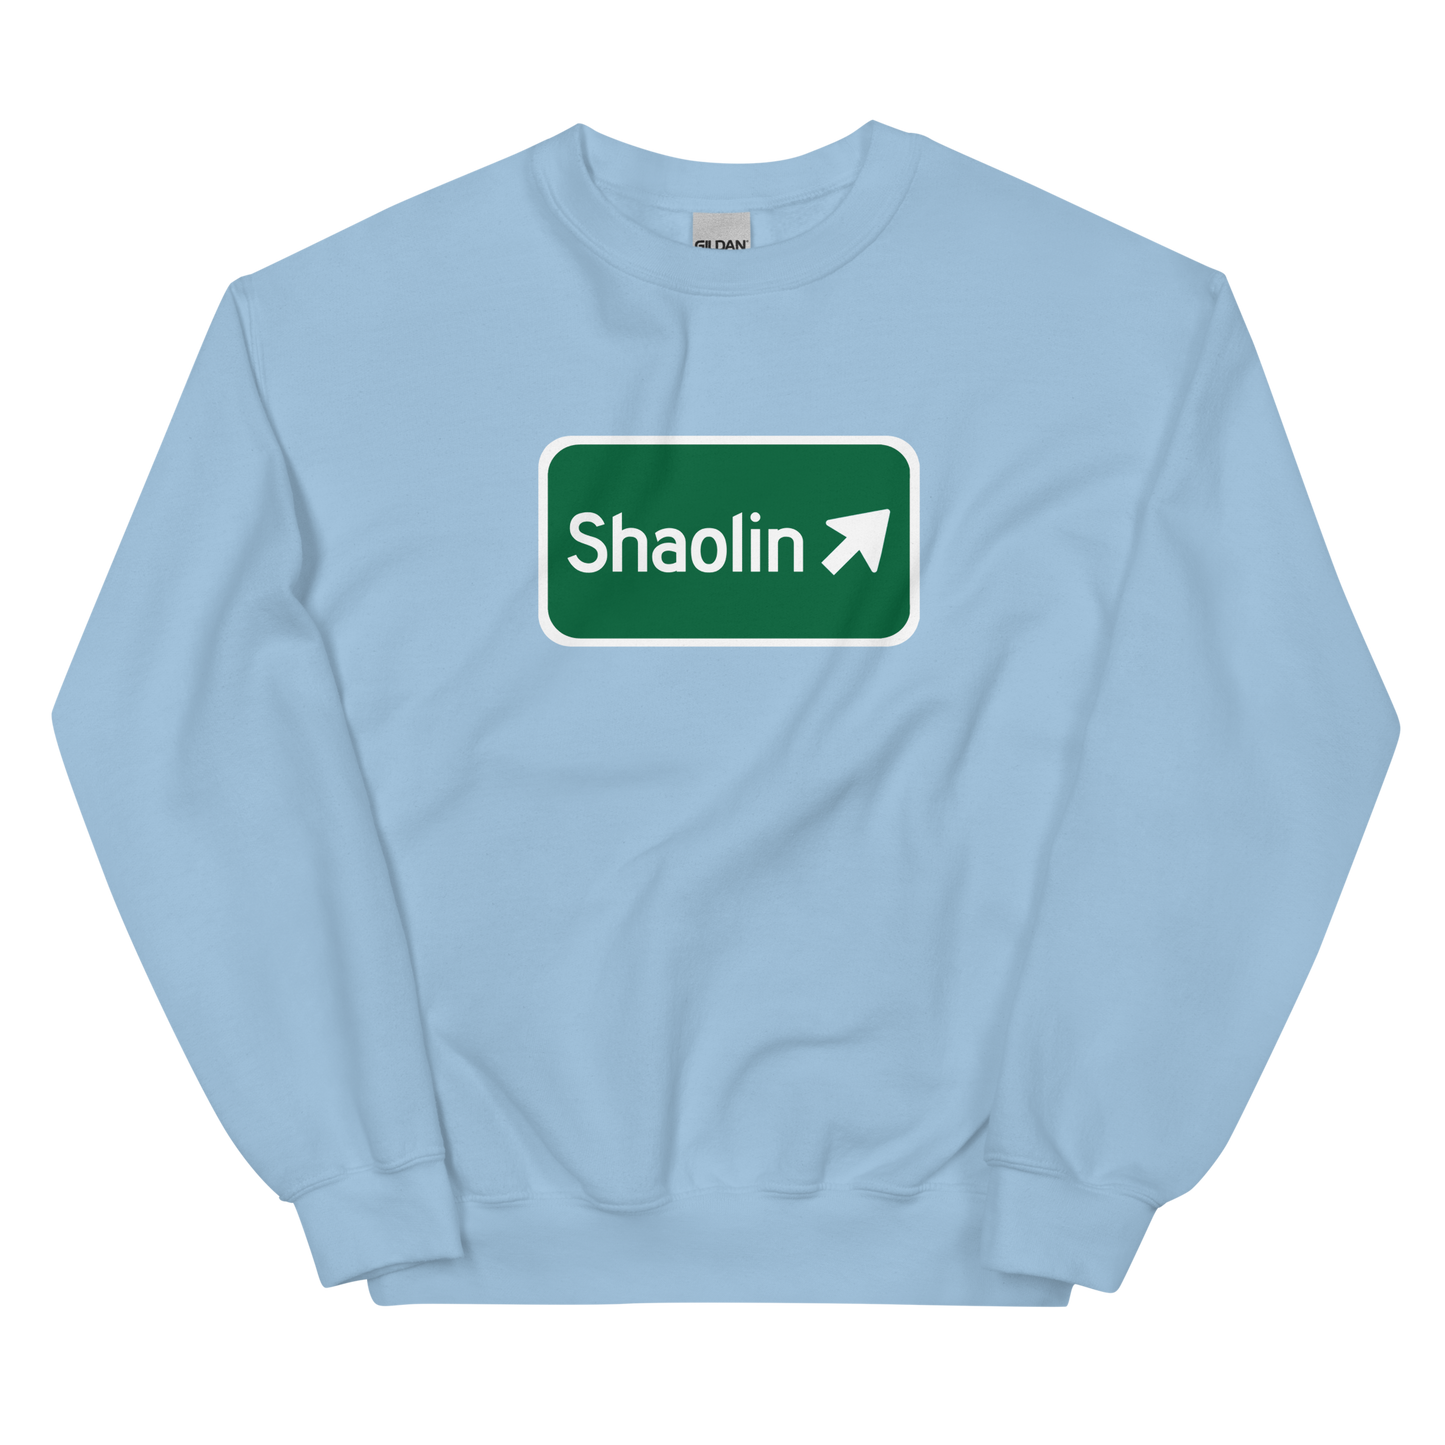 Shaolin sign crewneck sweatshirt